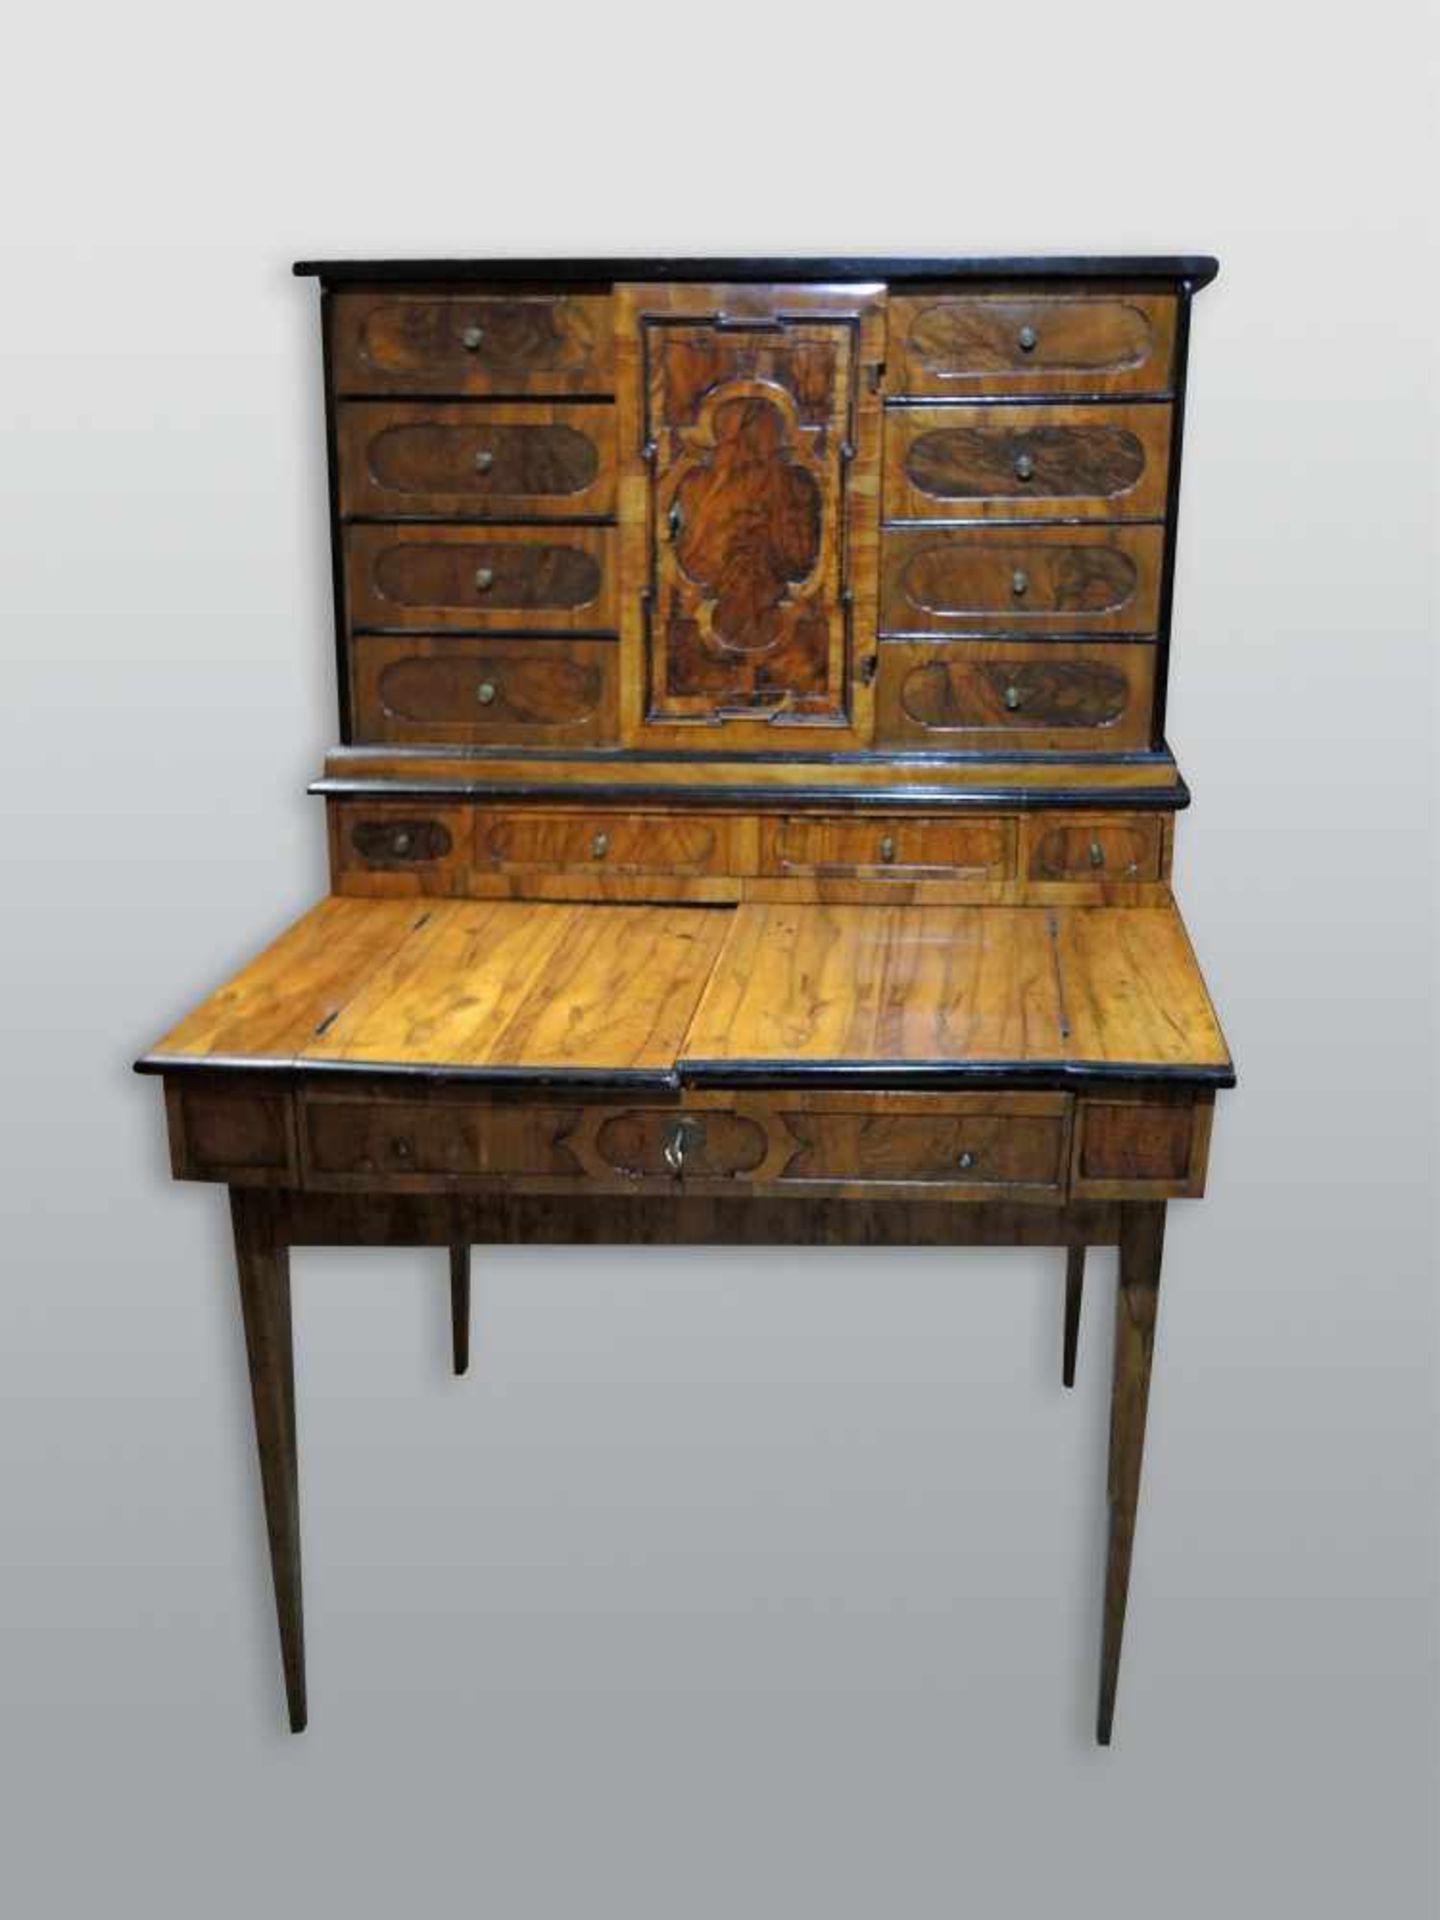 Aufsatz-Schreibmöbel mit TabernakelNussbaum-Untergestell. Aufsatz um 1820, Untergestell um 1860.